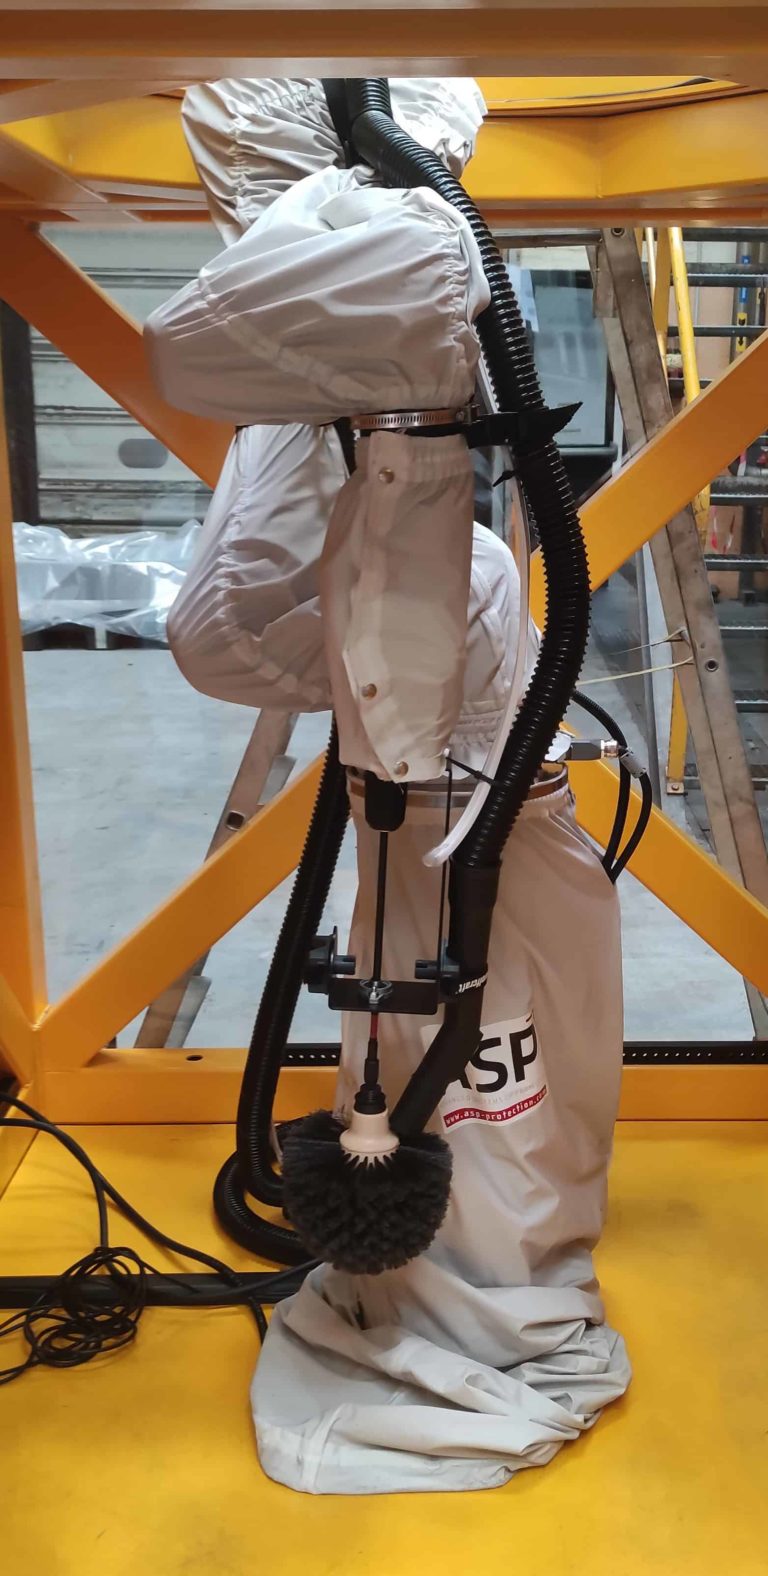 Robot sur colonne élévatrice dans une cage de protection avec une brosse de nettoyage